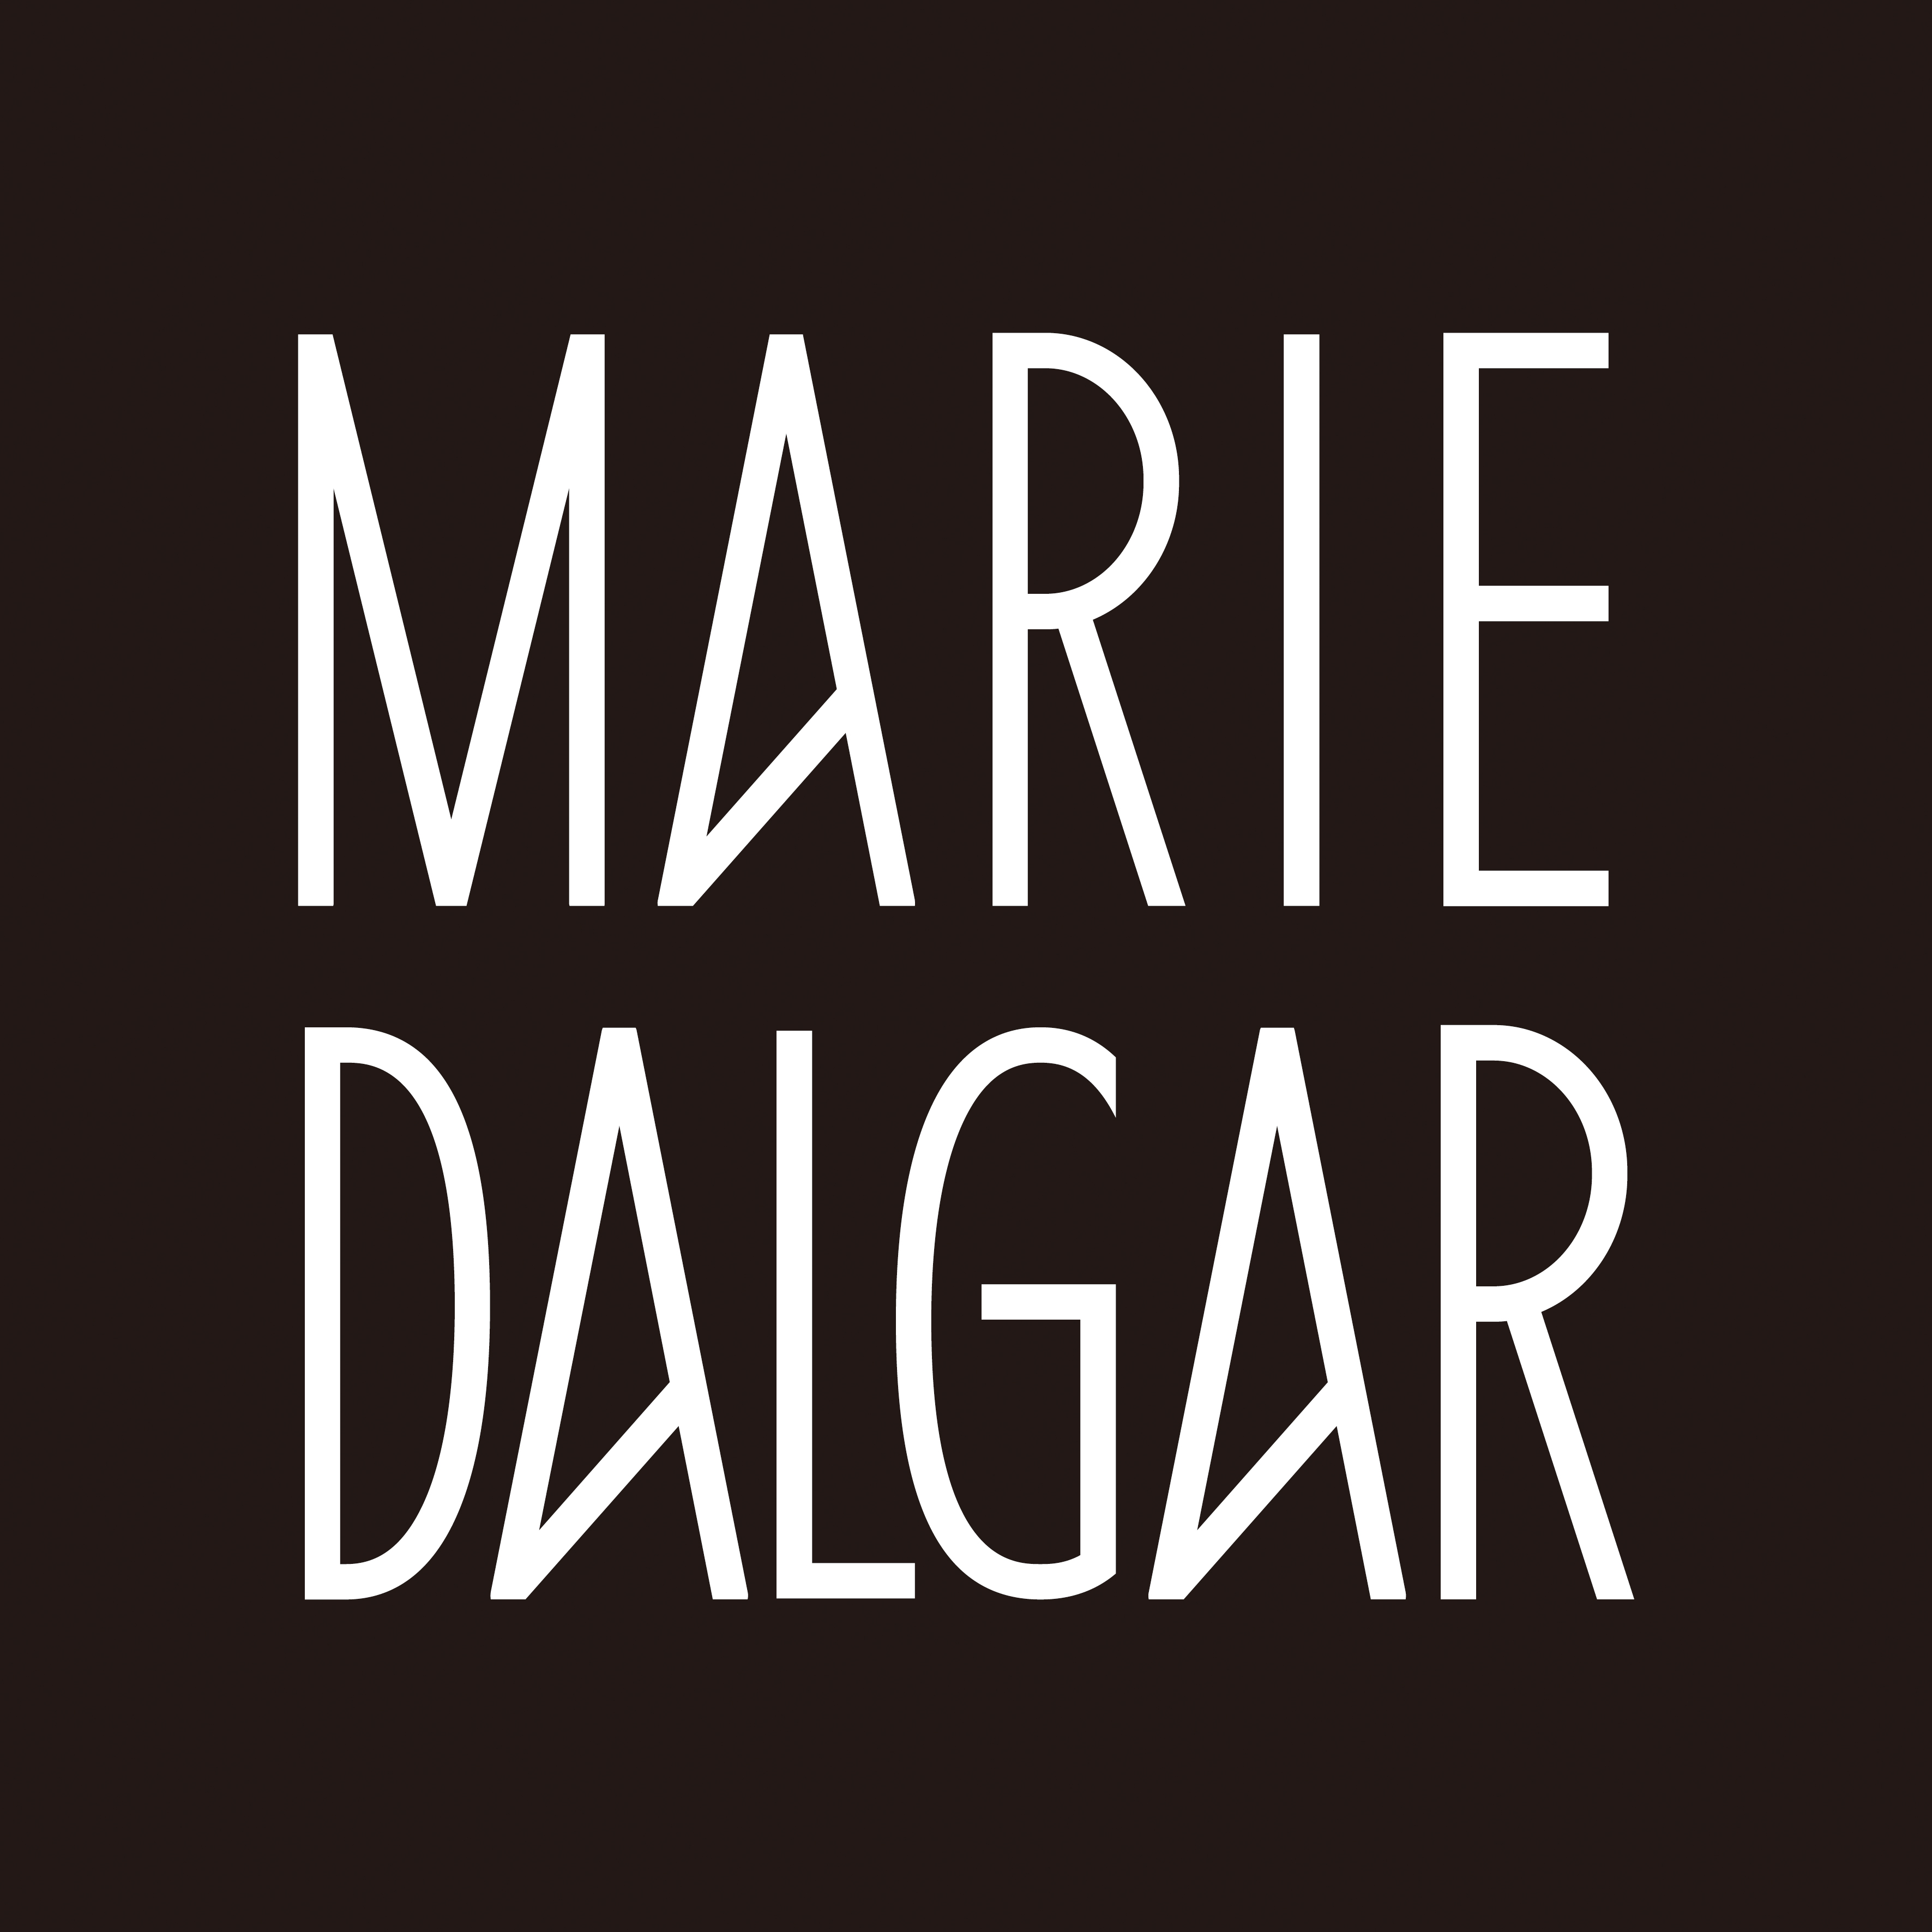 MARIE DALGAR